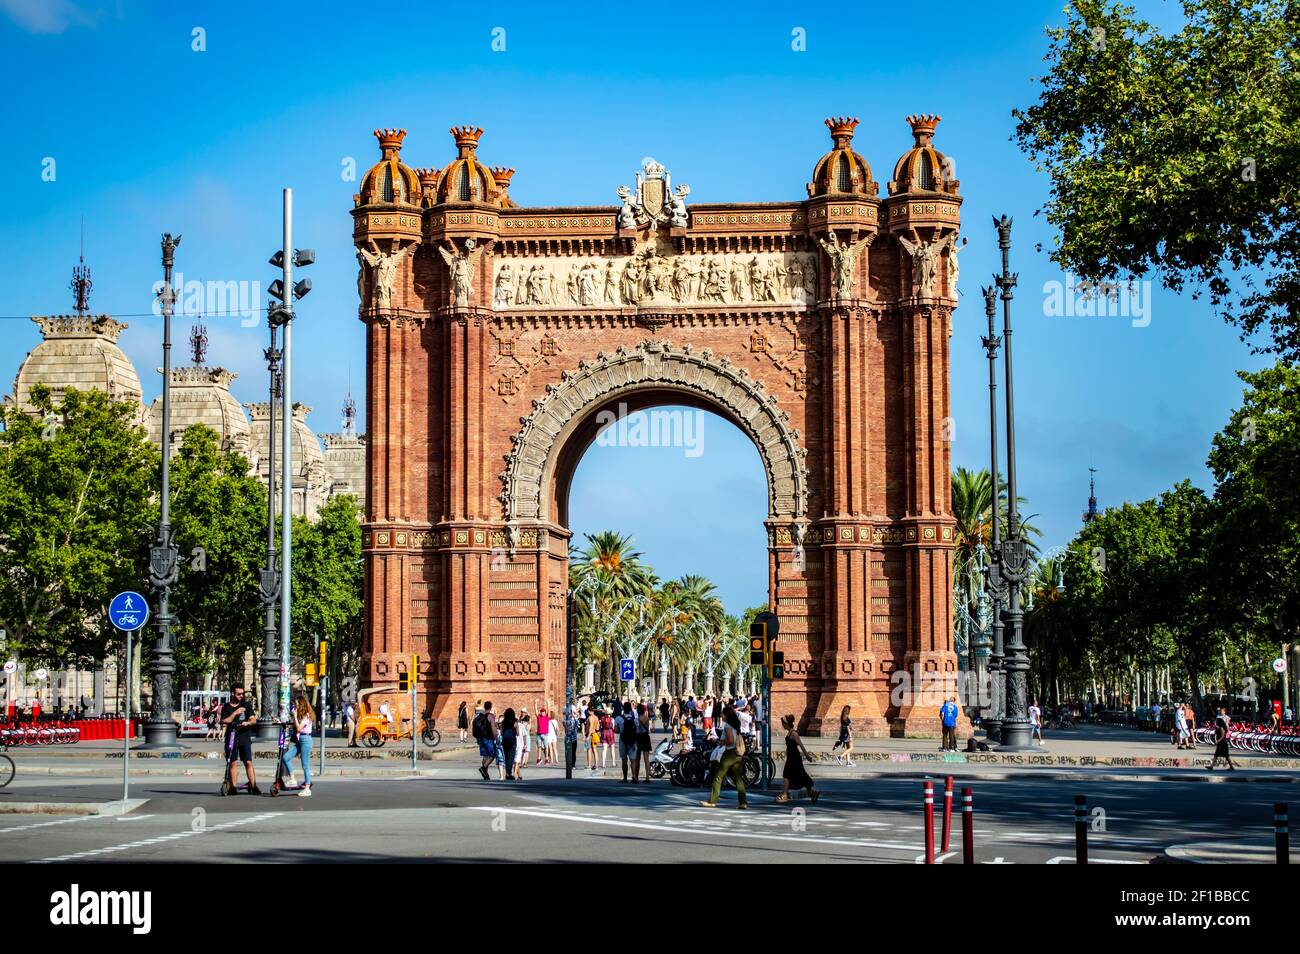 Barcelone, Espagne - 25 juillet 2019 : touristes et habitants de la région marchant dans l'Arche du Triumphal de Barcelone en Espagne Banque D'Images